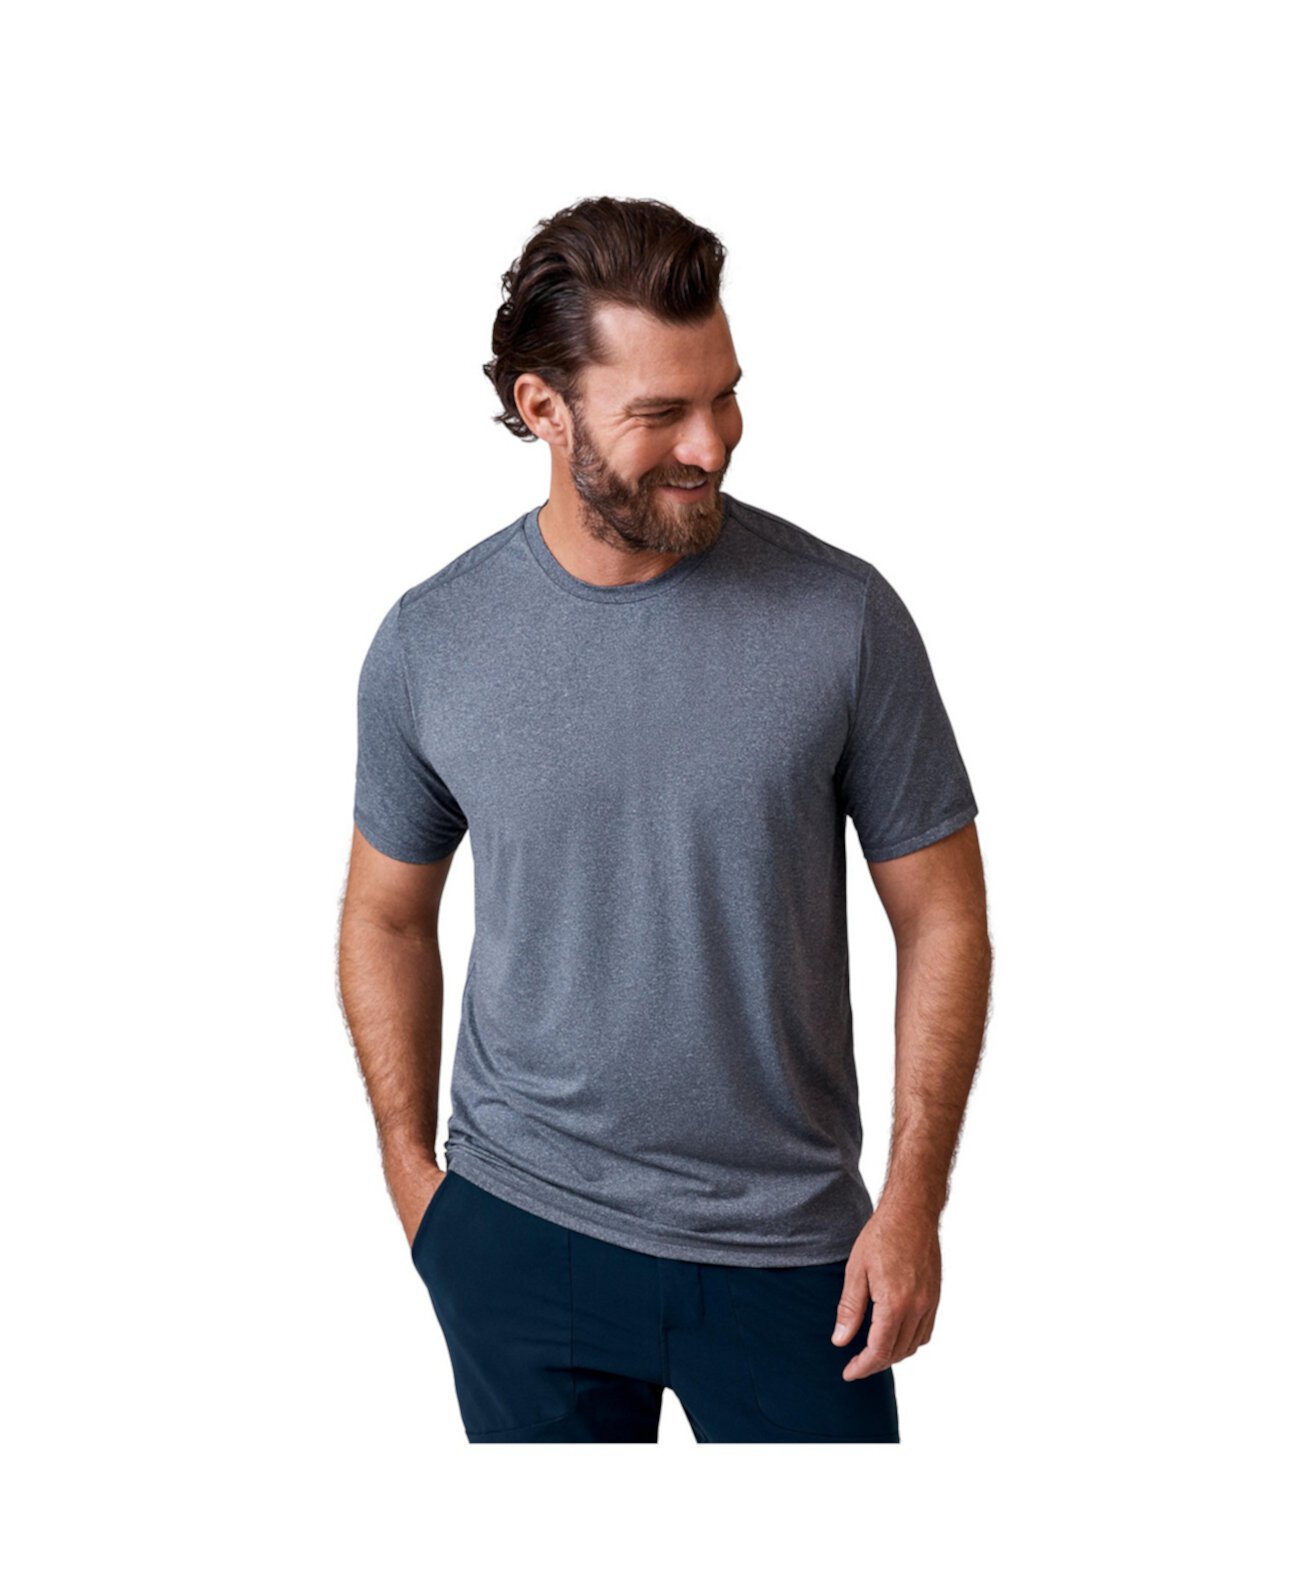 Мужская футболка с круглым вырезом Microtech Chill Cooling Free Country